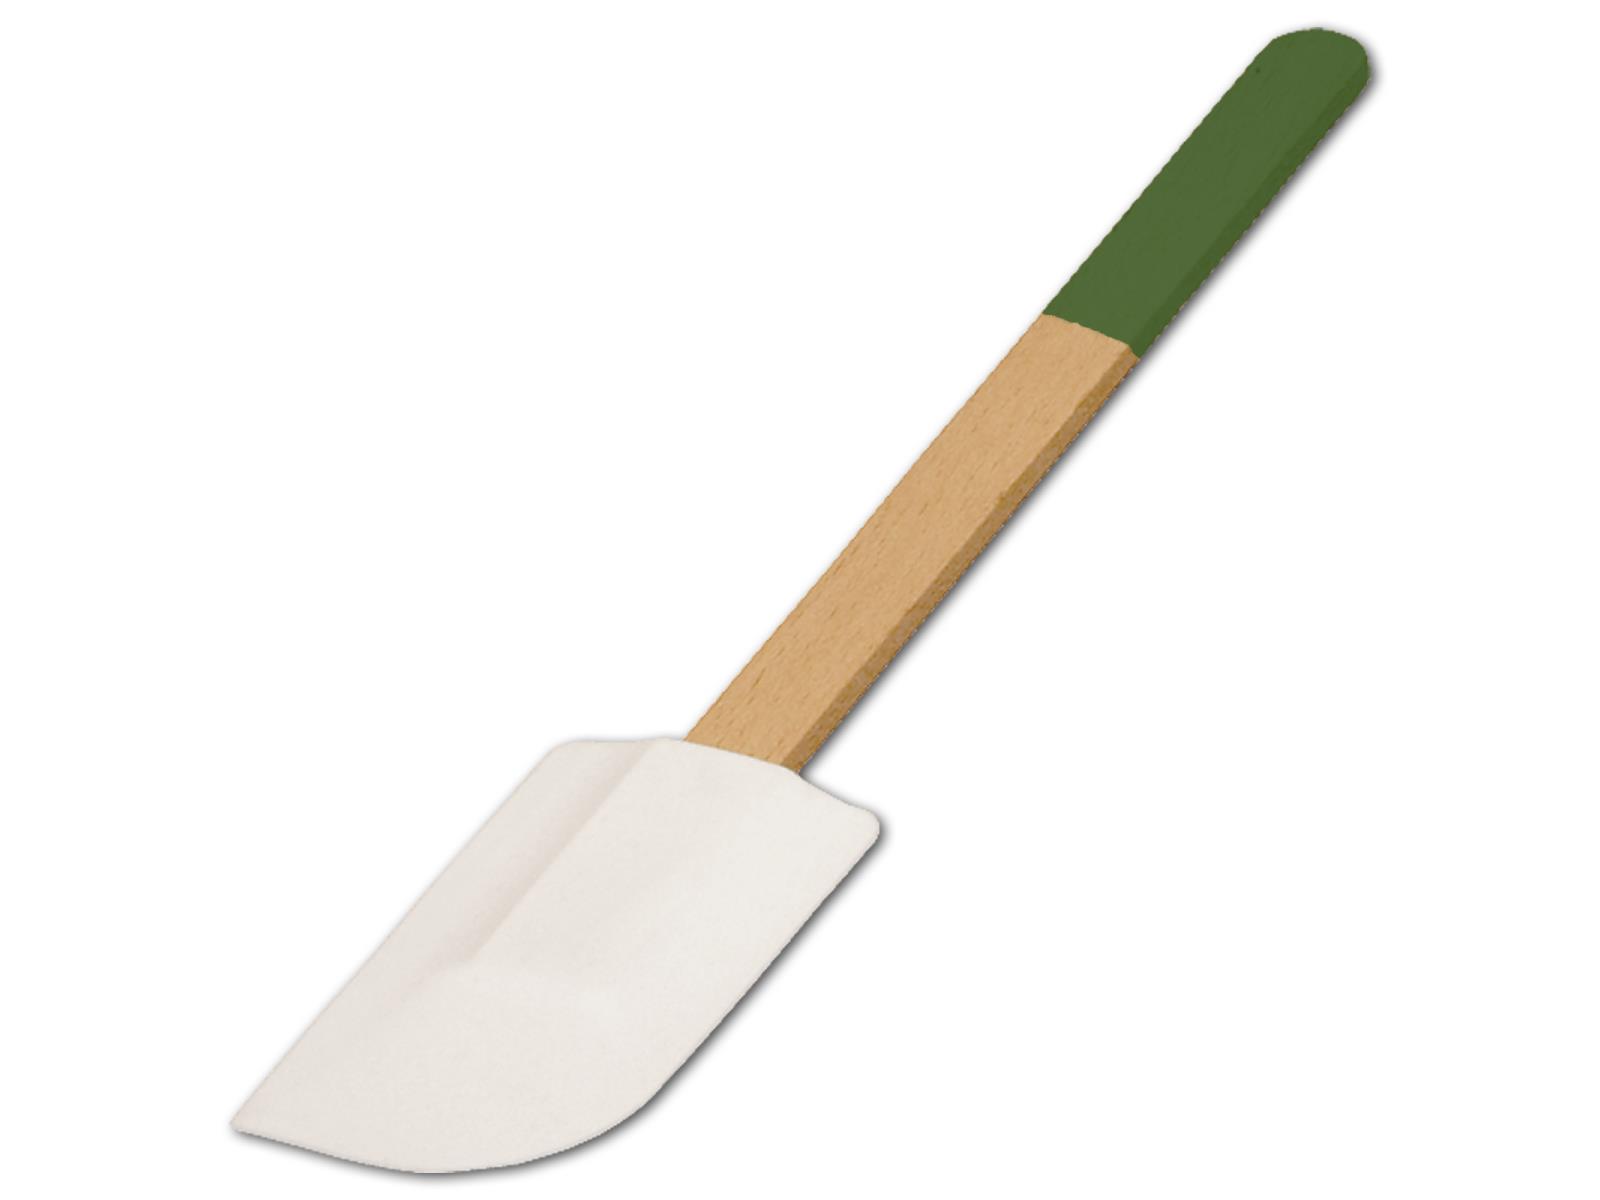 Teigschaber, breit, mit farbigem Griff, laubgrün, aus Holz 28 cm